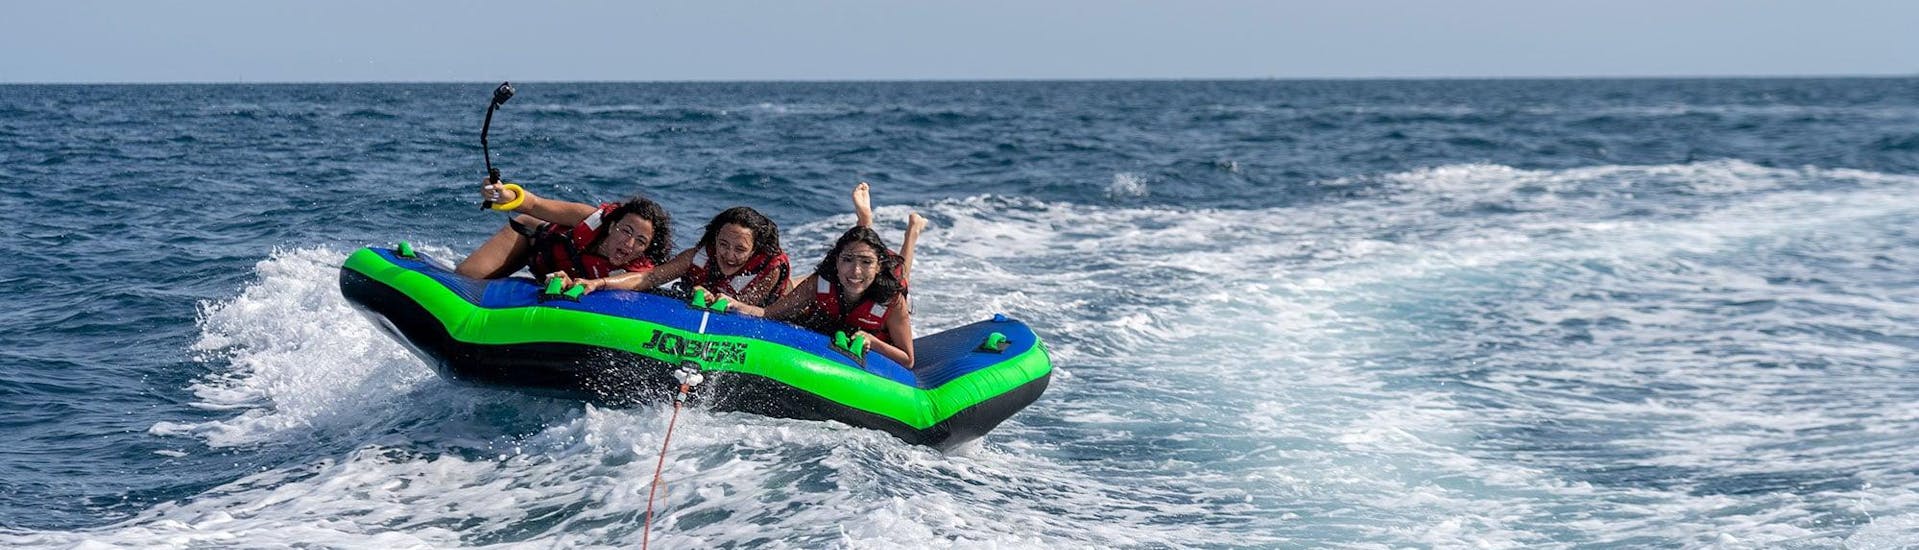 Tres mujeres a bordo de una colchoneta hinchable de Sea Riders remolcada por un barco en la costa de Barcelona.